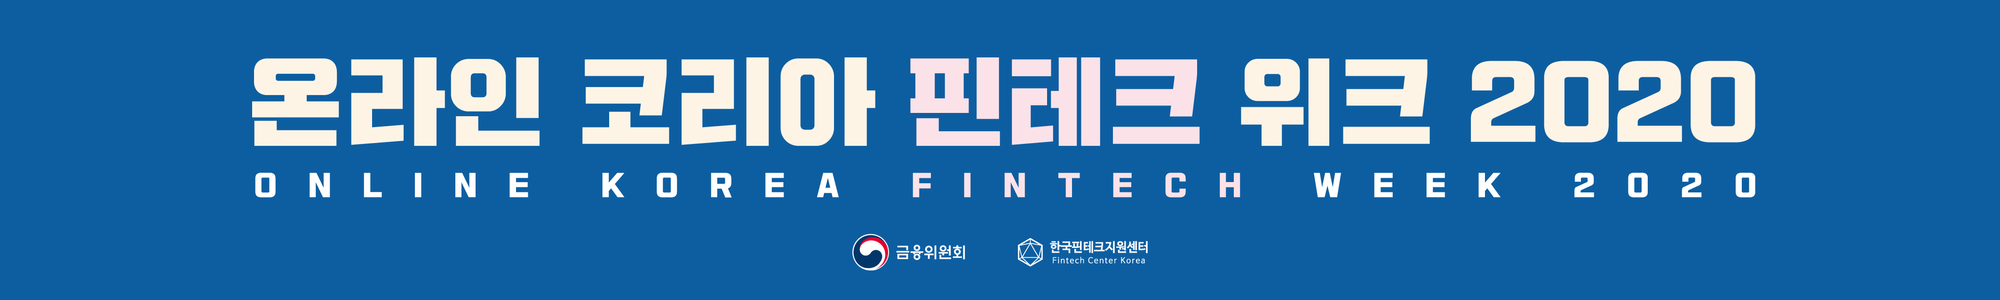 -3000x450mmX2-korea-fintech-week-2020-------_6000x900mm